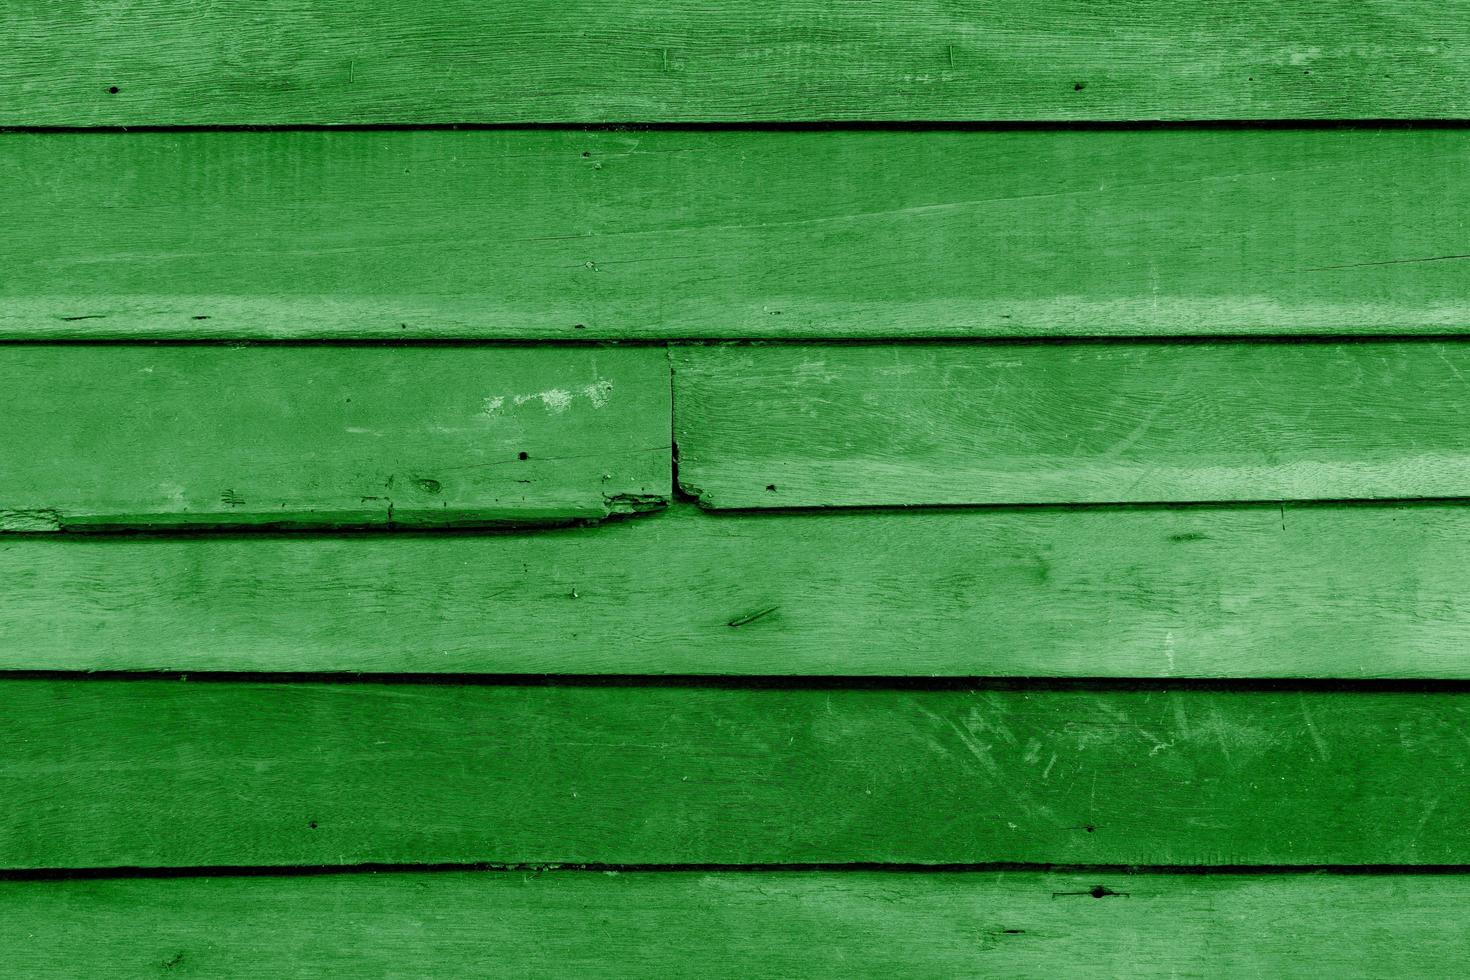 texture de planche de bois vert, fond abstrait, conception graphique d'idées pour la conception web ou la bannière photo